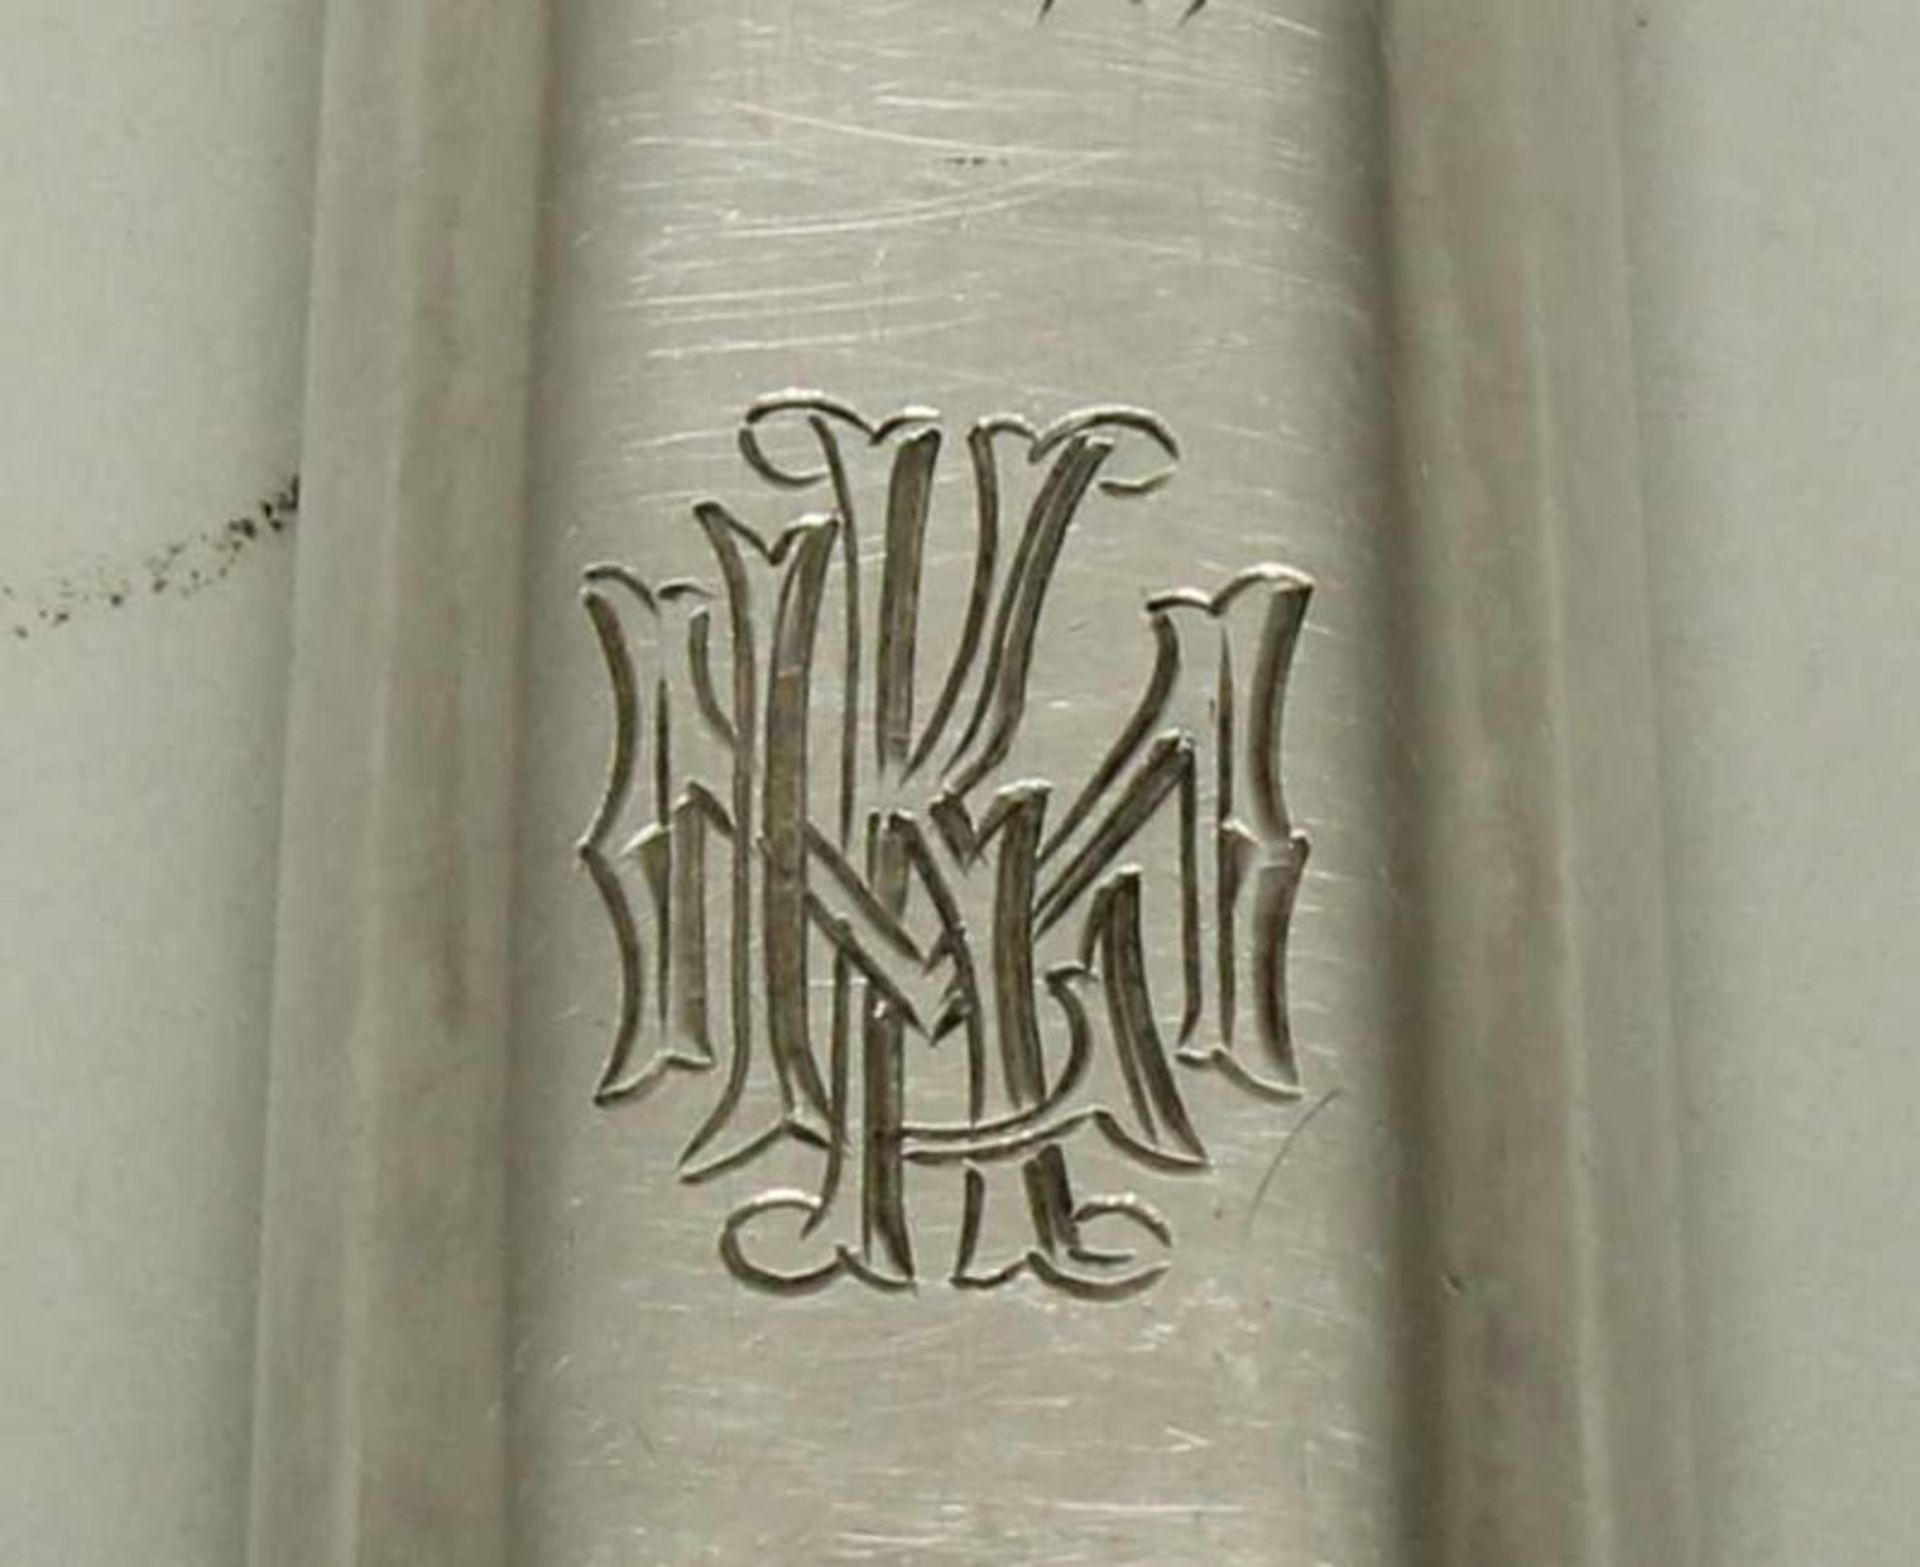 Fischheber, Silber 84er, Moskau, 1870, Stadtmarke, Beschaumarke, Meistermarke M.K, Laffe à jour - Bild 3 aus 3